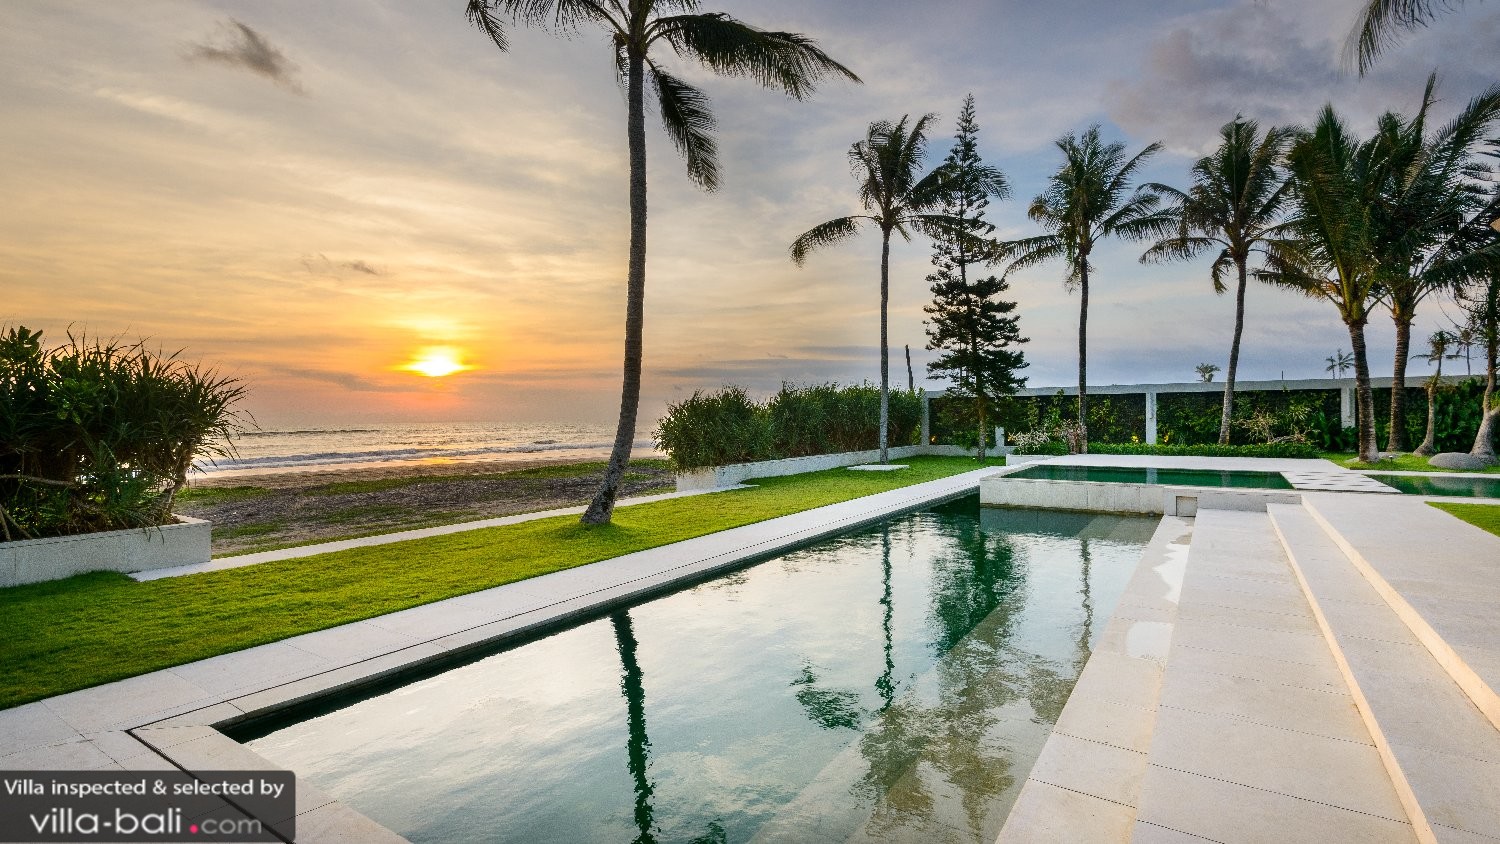 Villa Vedas - Bali villas with beach views